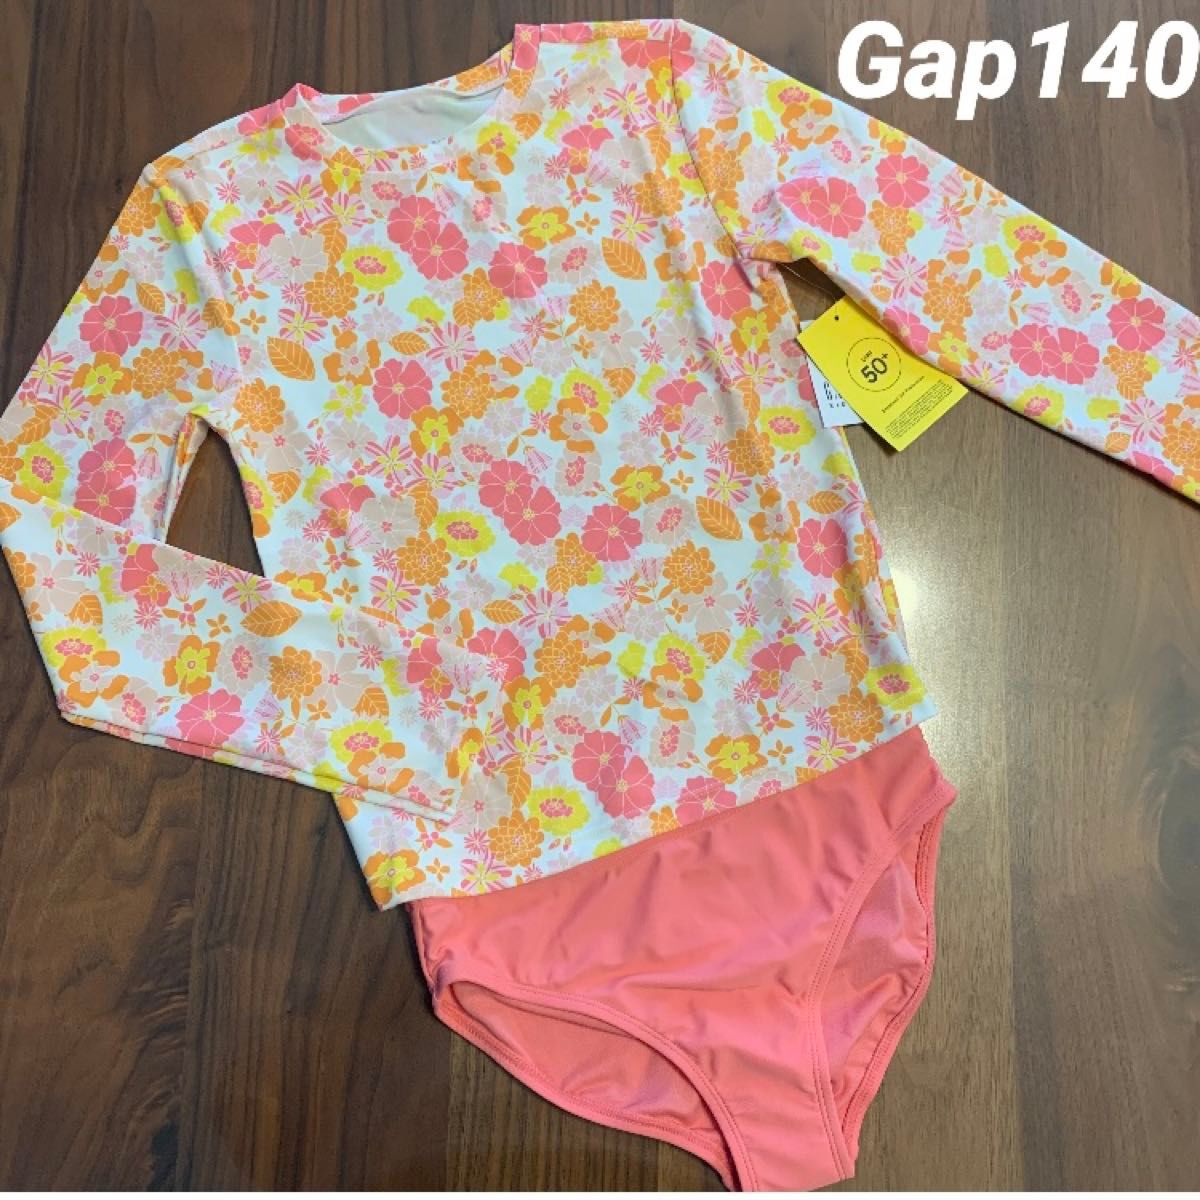 【新品】GAP KIDS ギャップ キッズ ラッシュガード 長袖 セパレート 花柄 水着 女の子 140cm スイムウェア